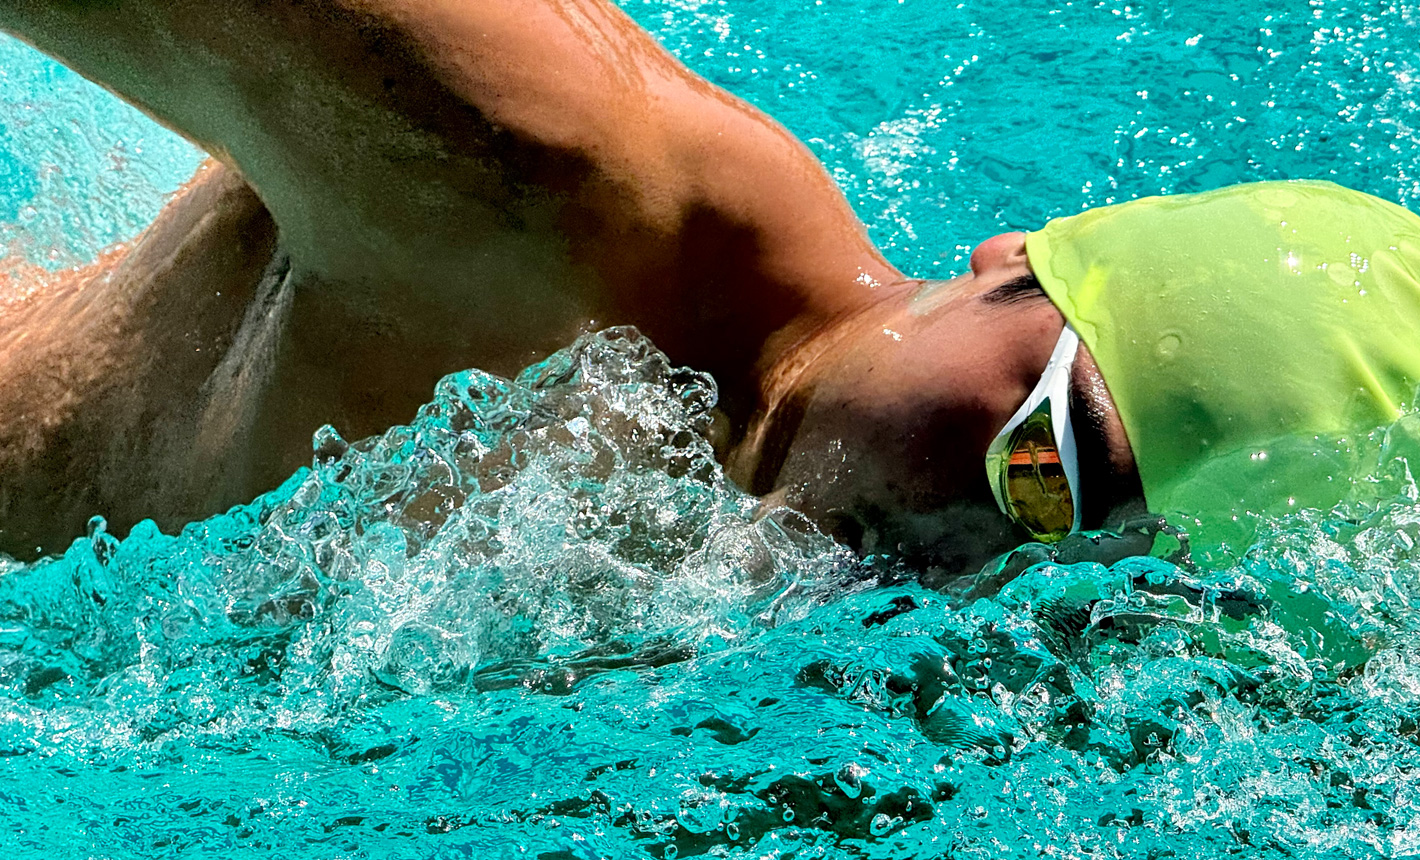 Et meget detaljeret billede af en svømmer i en pool, hvor der er zoomet ind, og vandet sprøjter omkring ham